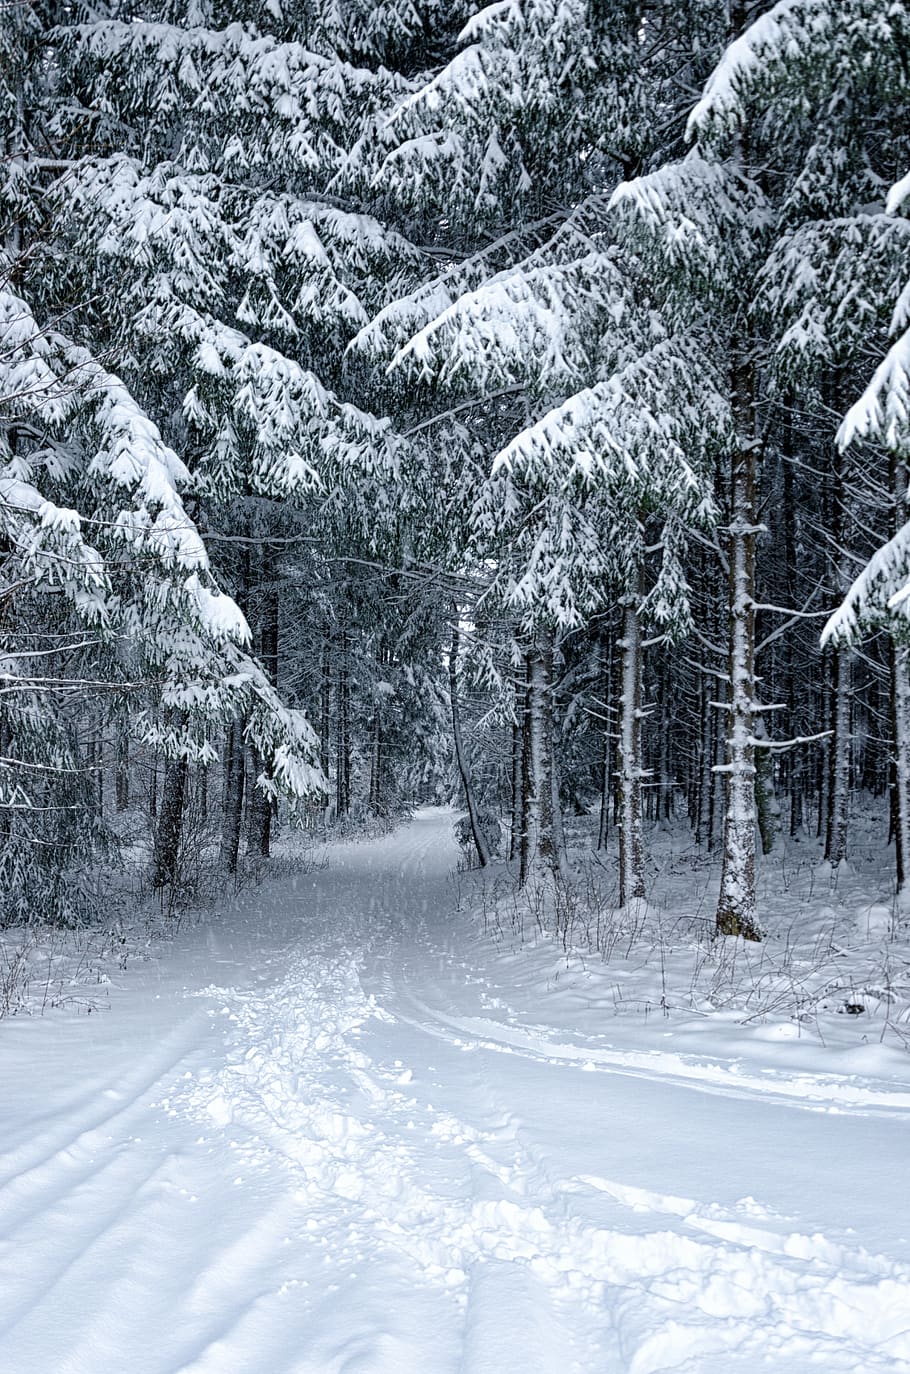 neve, inverno, frio, geada, congelado, paisagem, árvore, madeira, nevasca, gelado